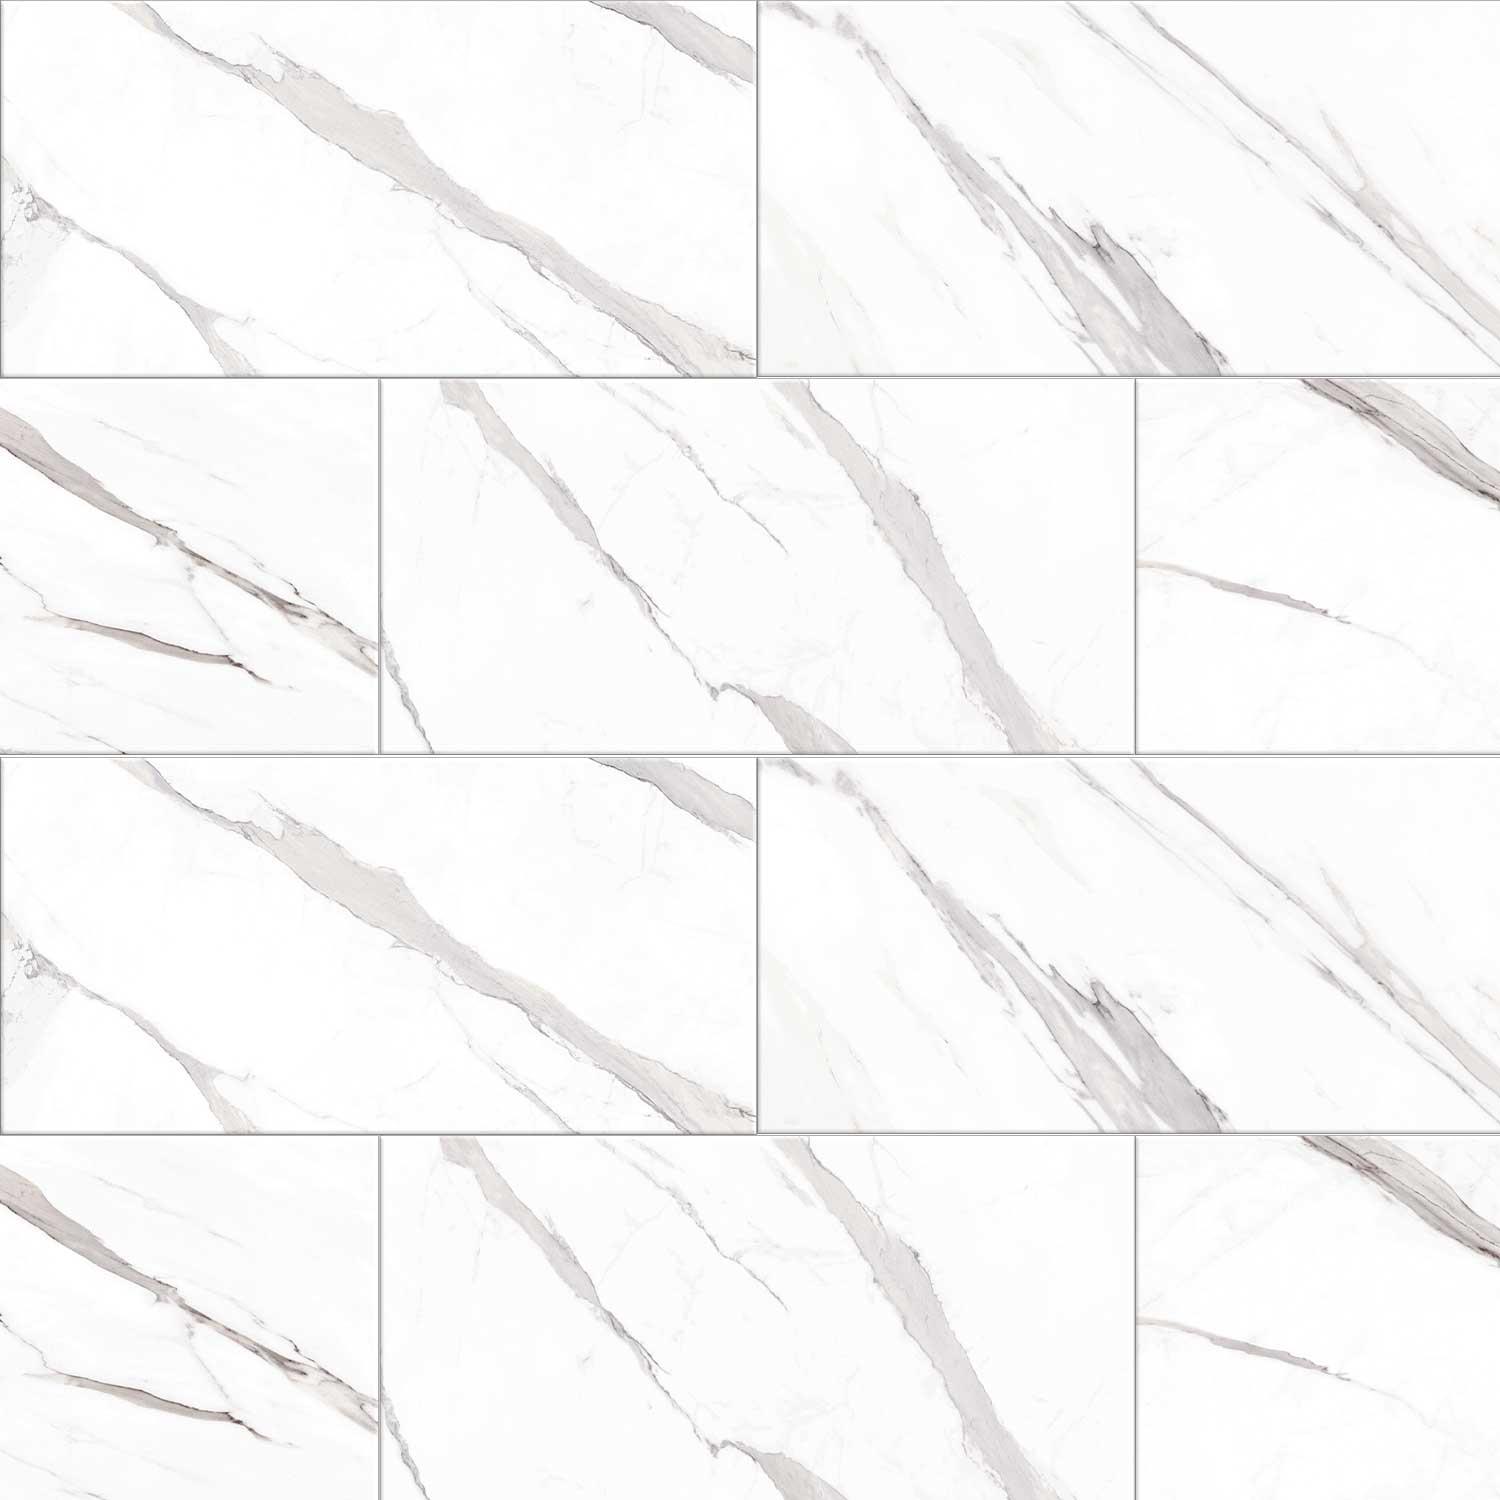 Carrara Marbles Tile Polished White Porcelin Walls Floors Large 600 x 1200mm